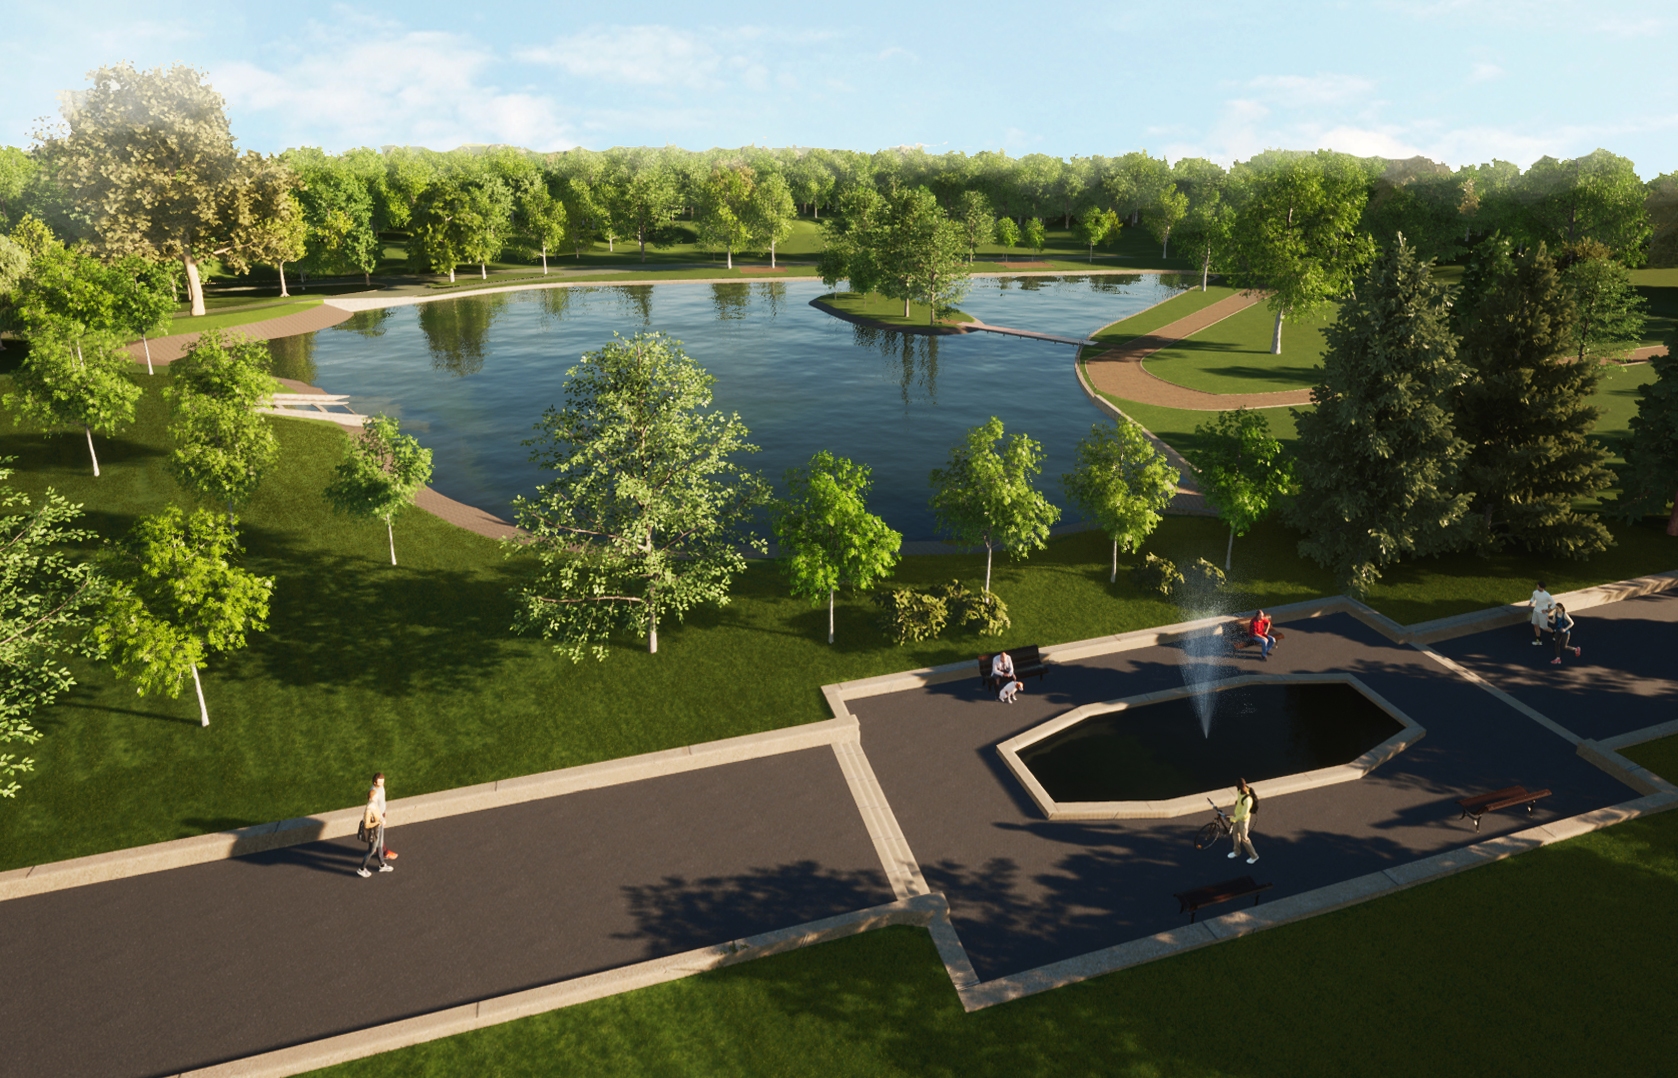 Vizualizace budoucí podoby rybníku Letná